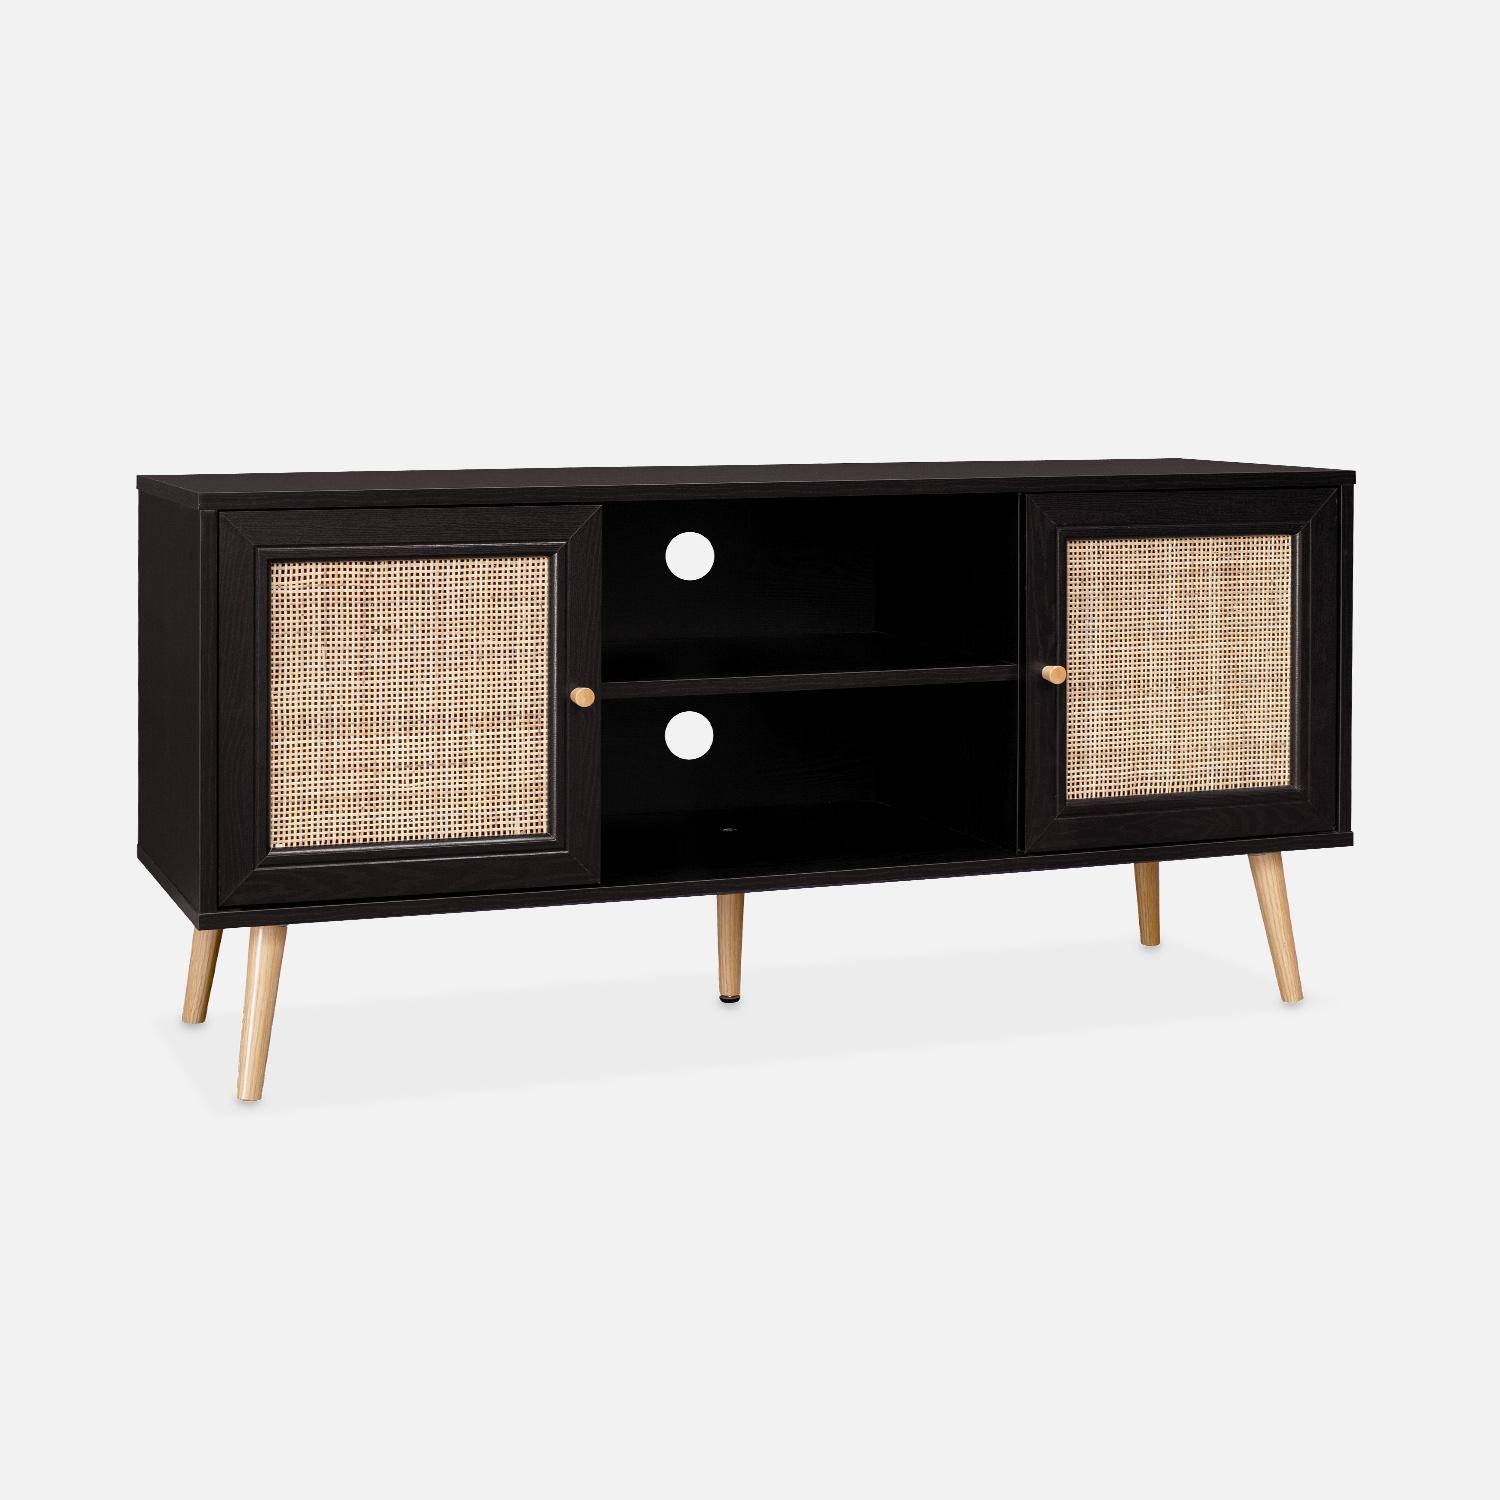 Scandi-style wood and cane rattan TV stand, 2 shelves, 2 doors, 120x39x56.5cm - Boheme - Black,sweeek,Photo3